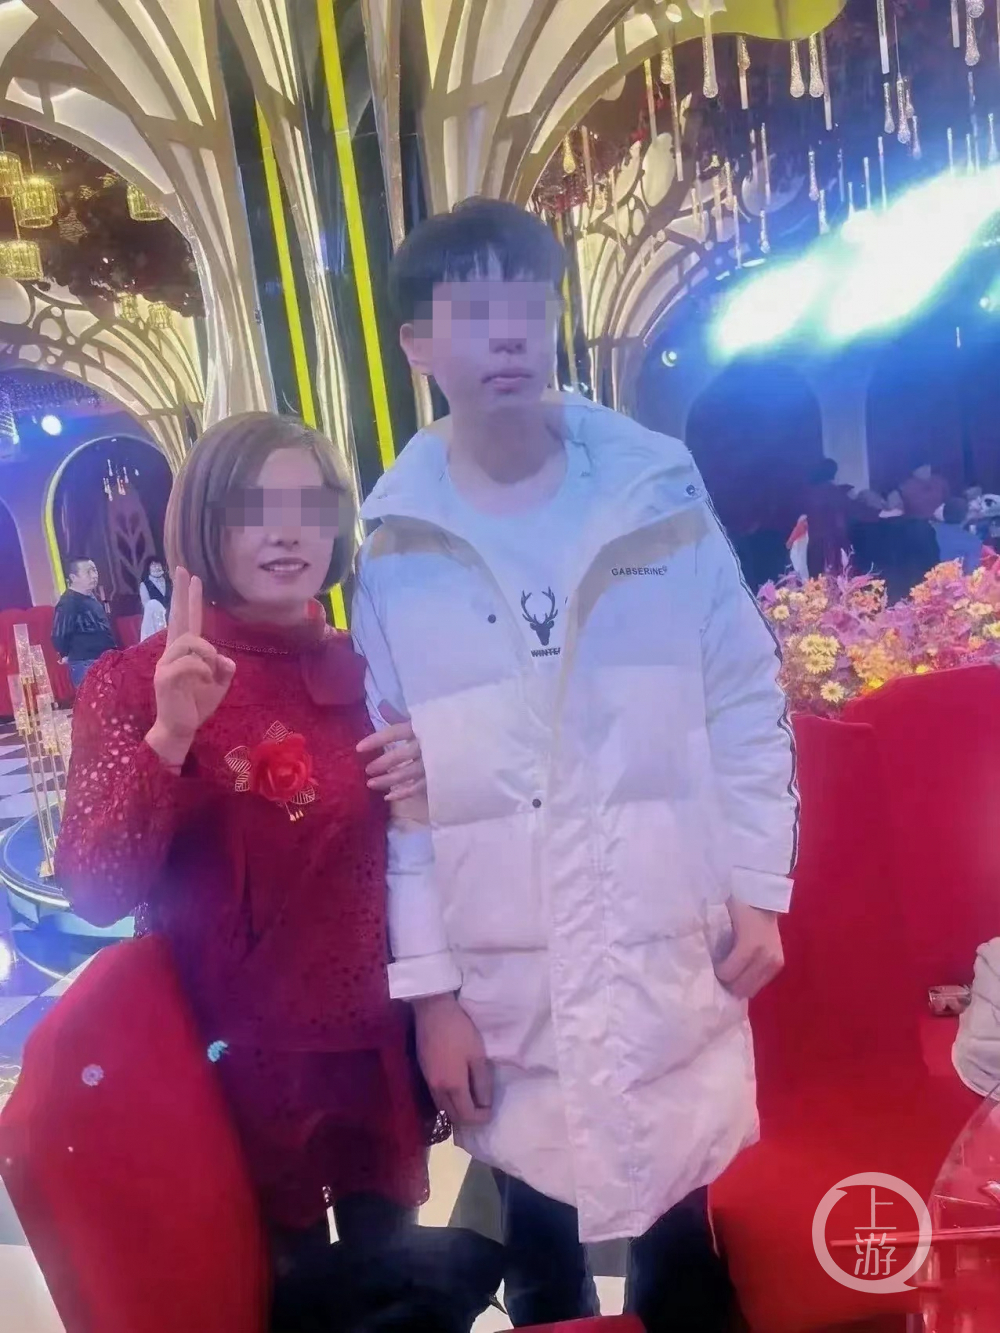 ▲刘学州和亲生母亲在弟弟生日宴上的合影。图片来源/个人微博